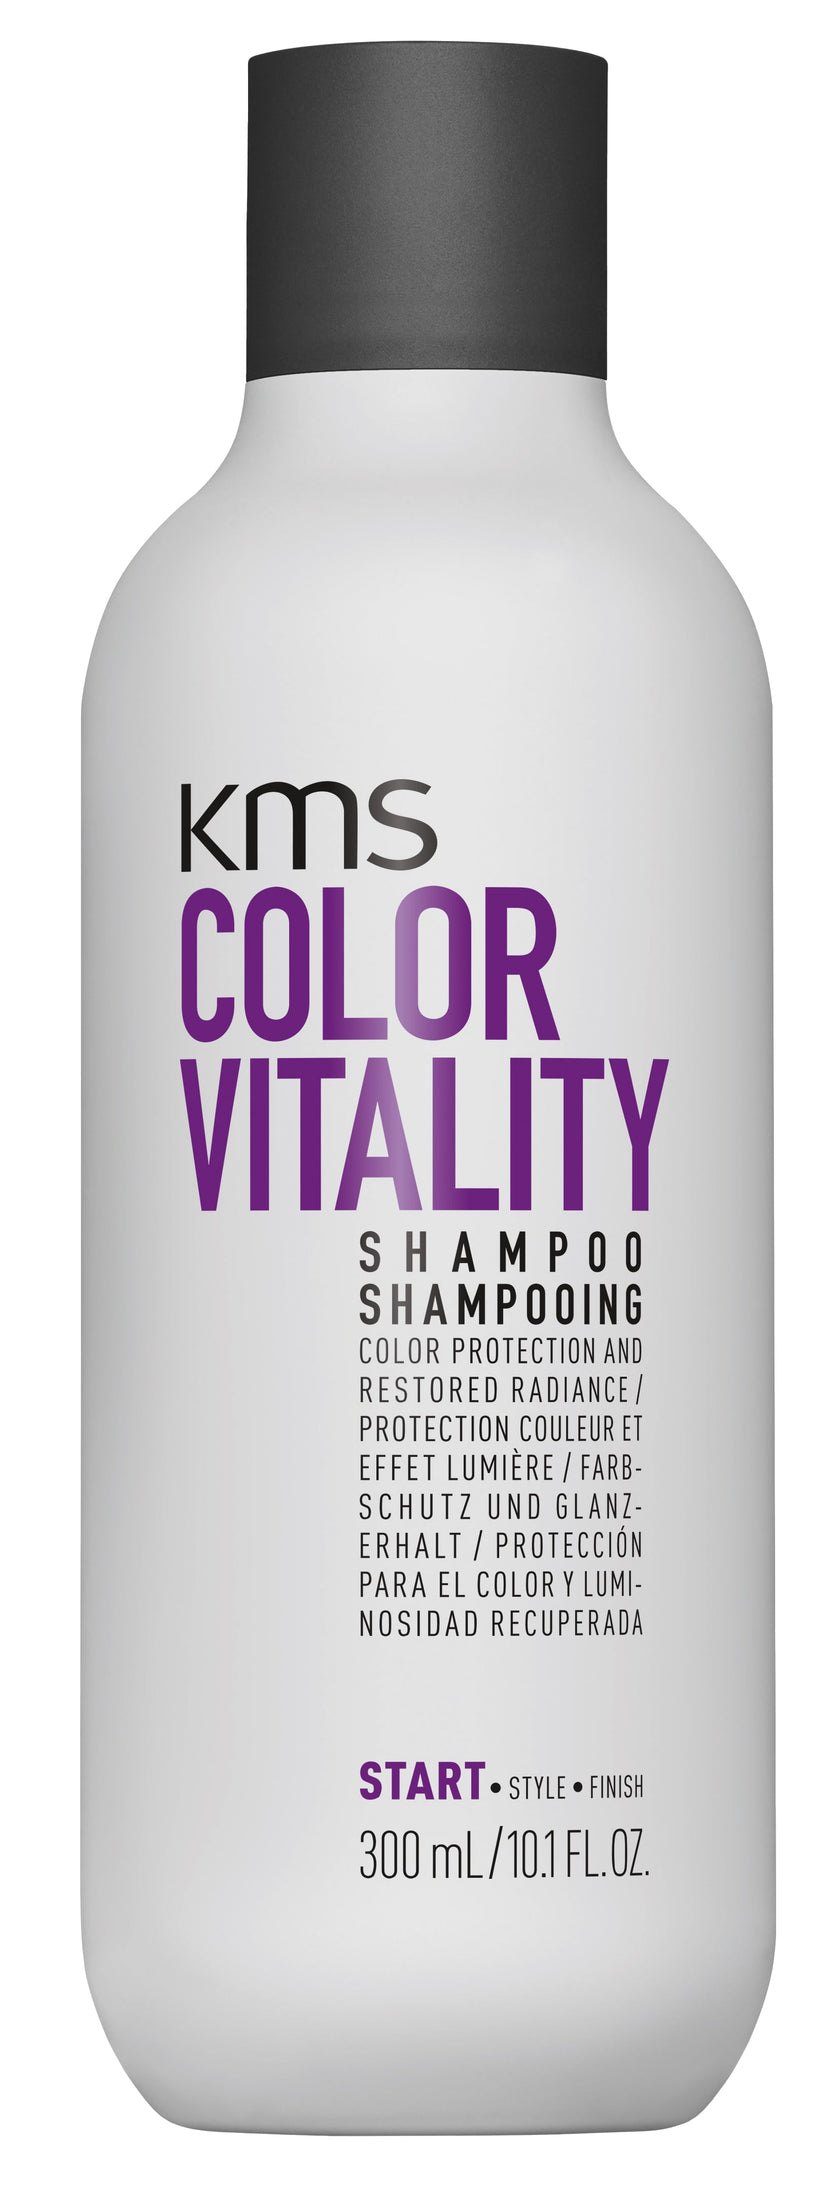 ColorVitality Shampoo Image